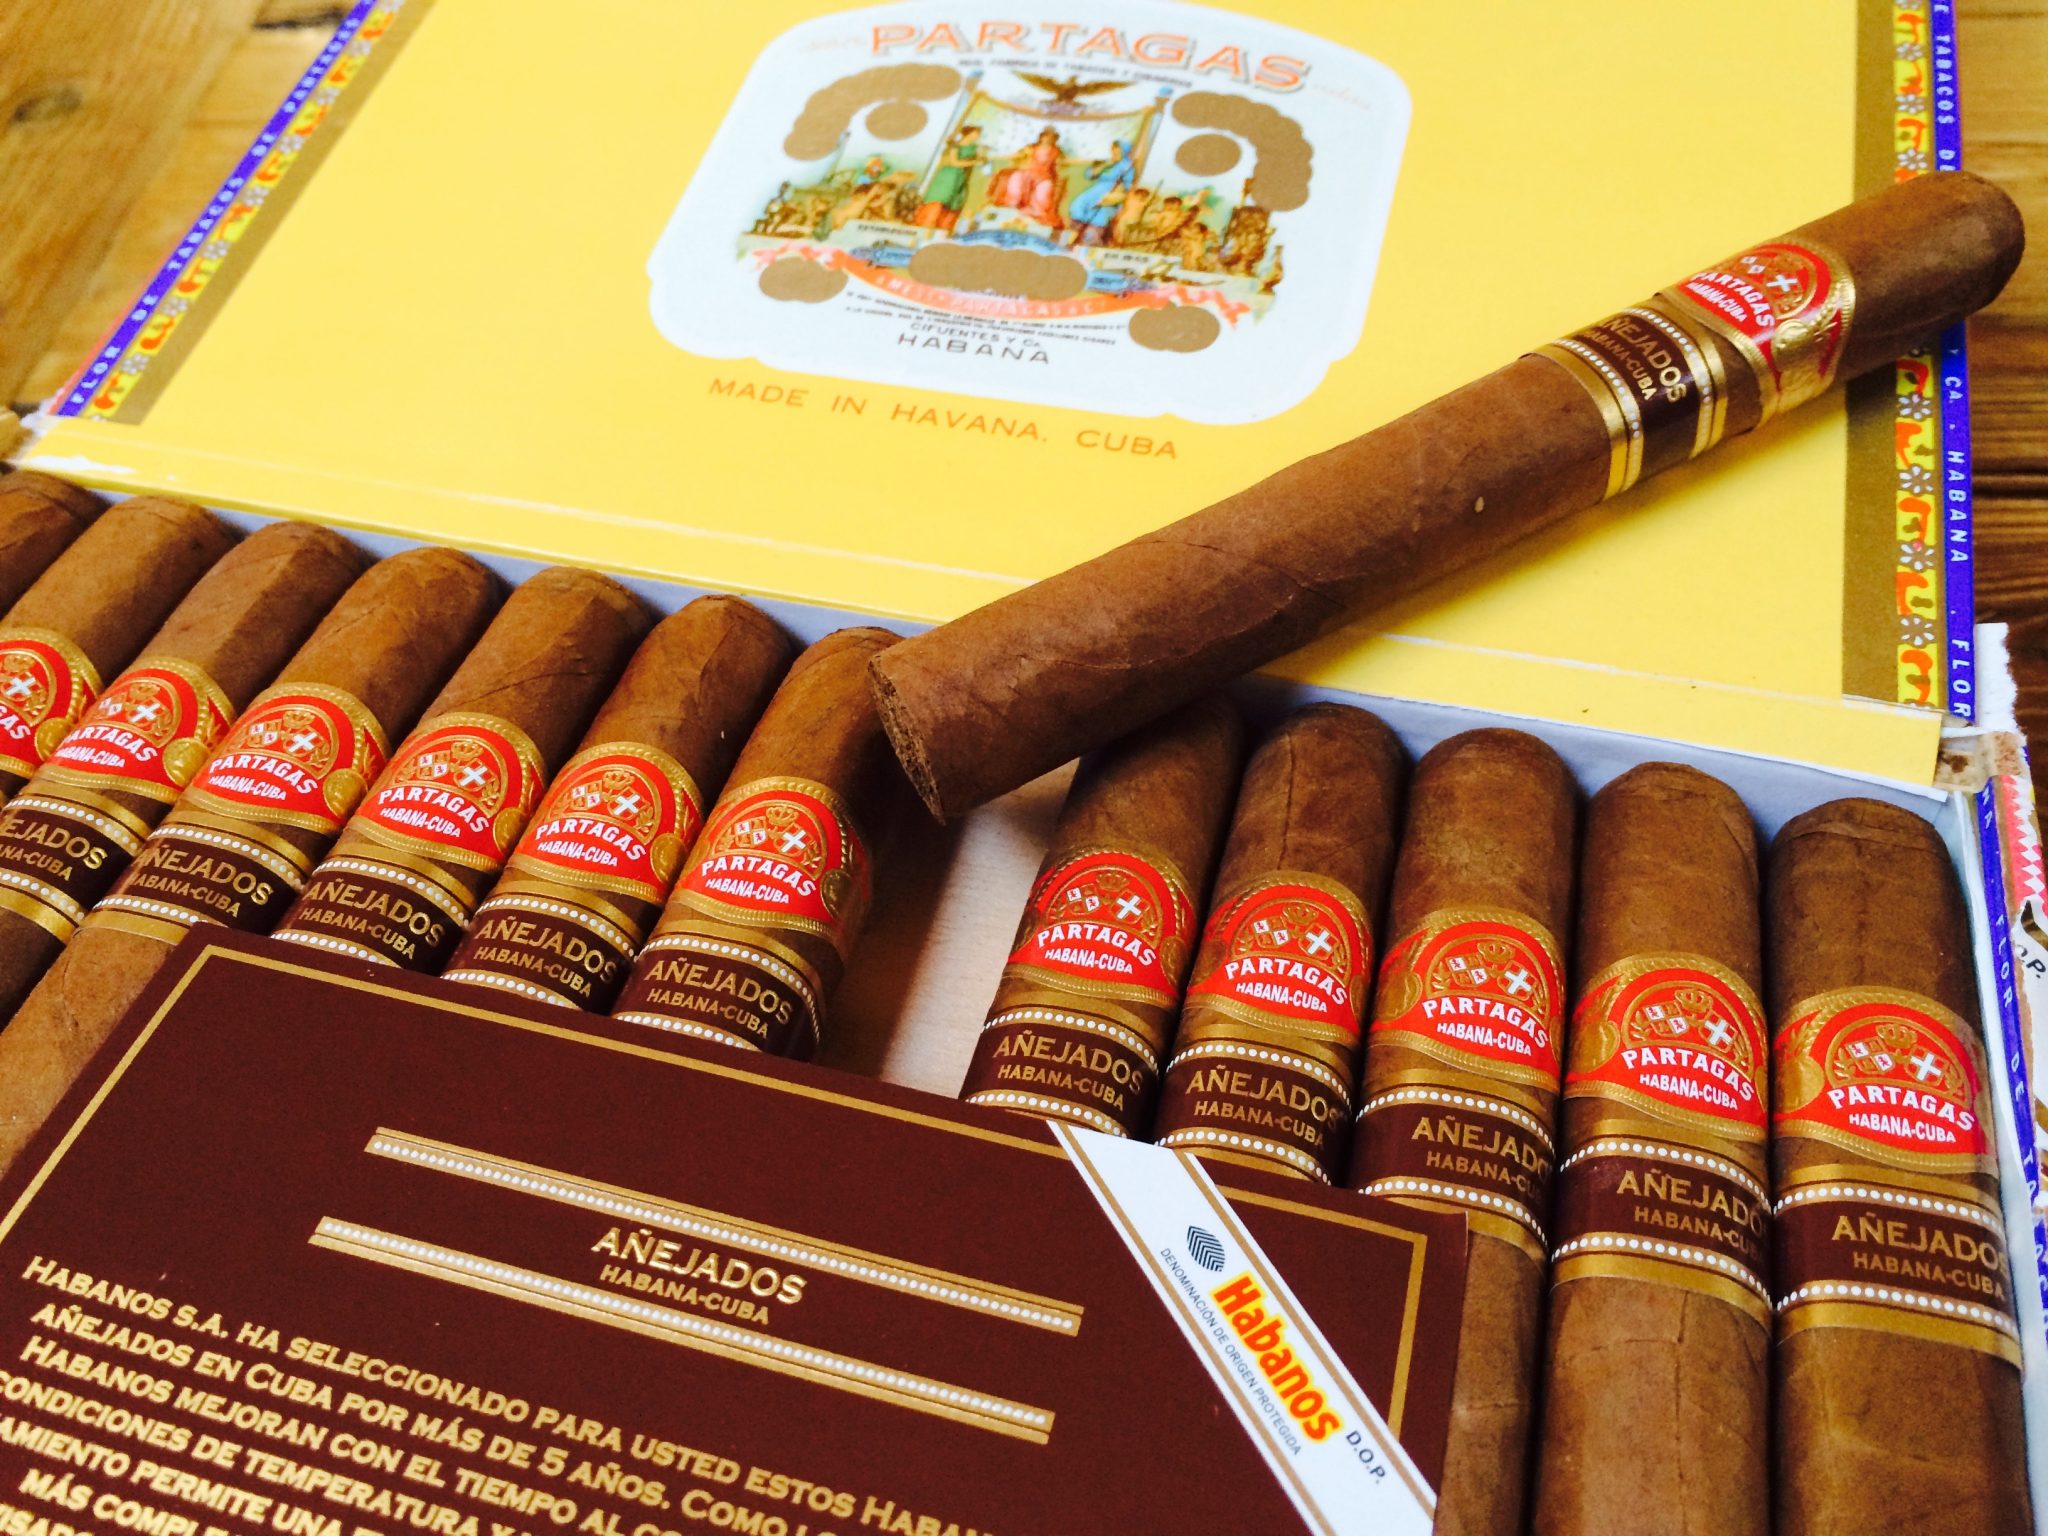 Thật ngạc nhiên Top thương hiệu sản xuất xì gà Cuba